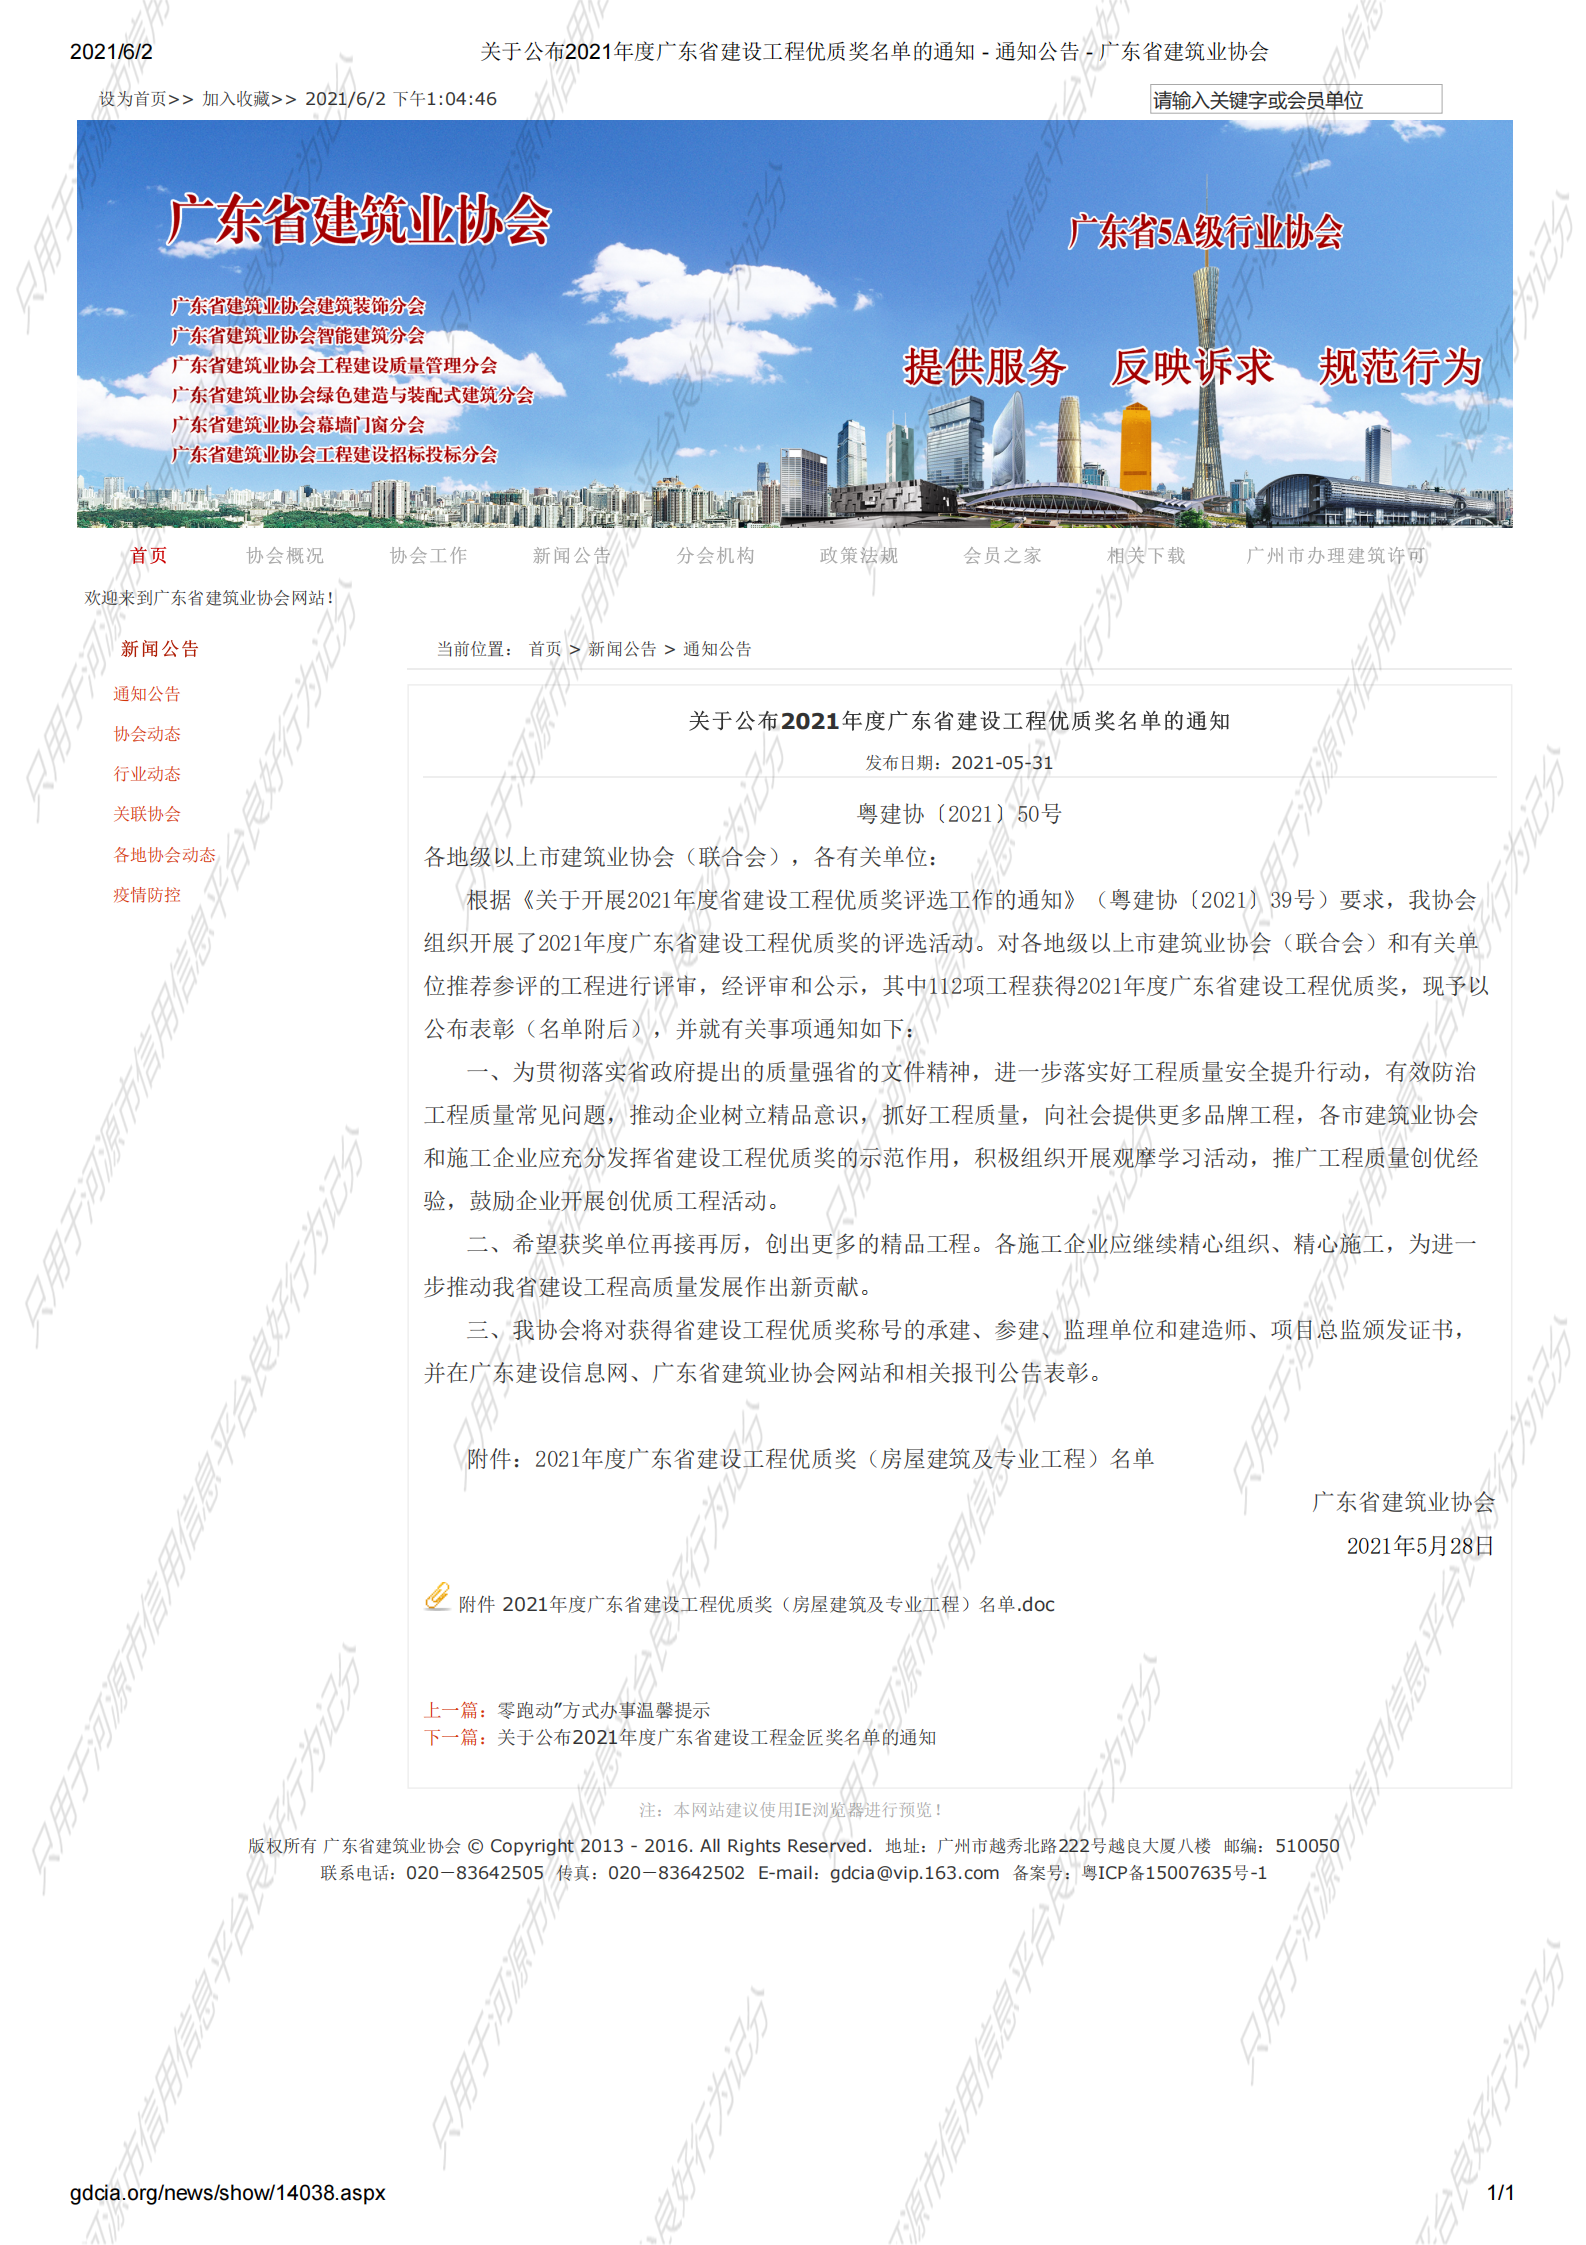 关于公布2021年度广东省建设工程优质奖名单的通知 - 通知公告 - 广东省建筑业协会_00